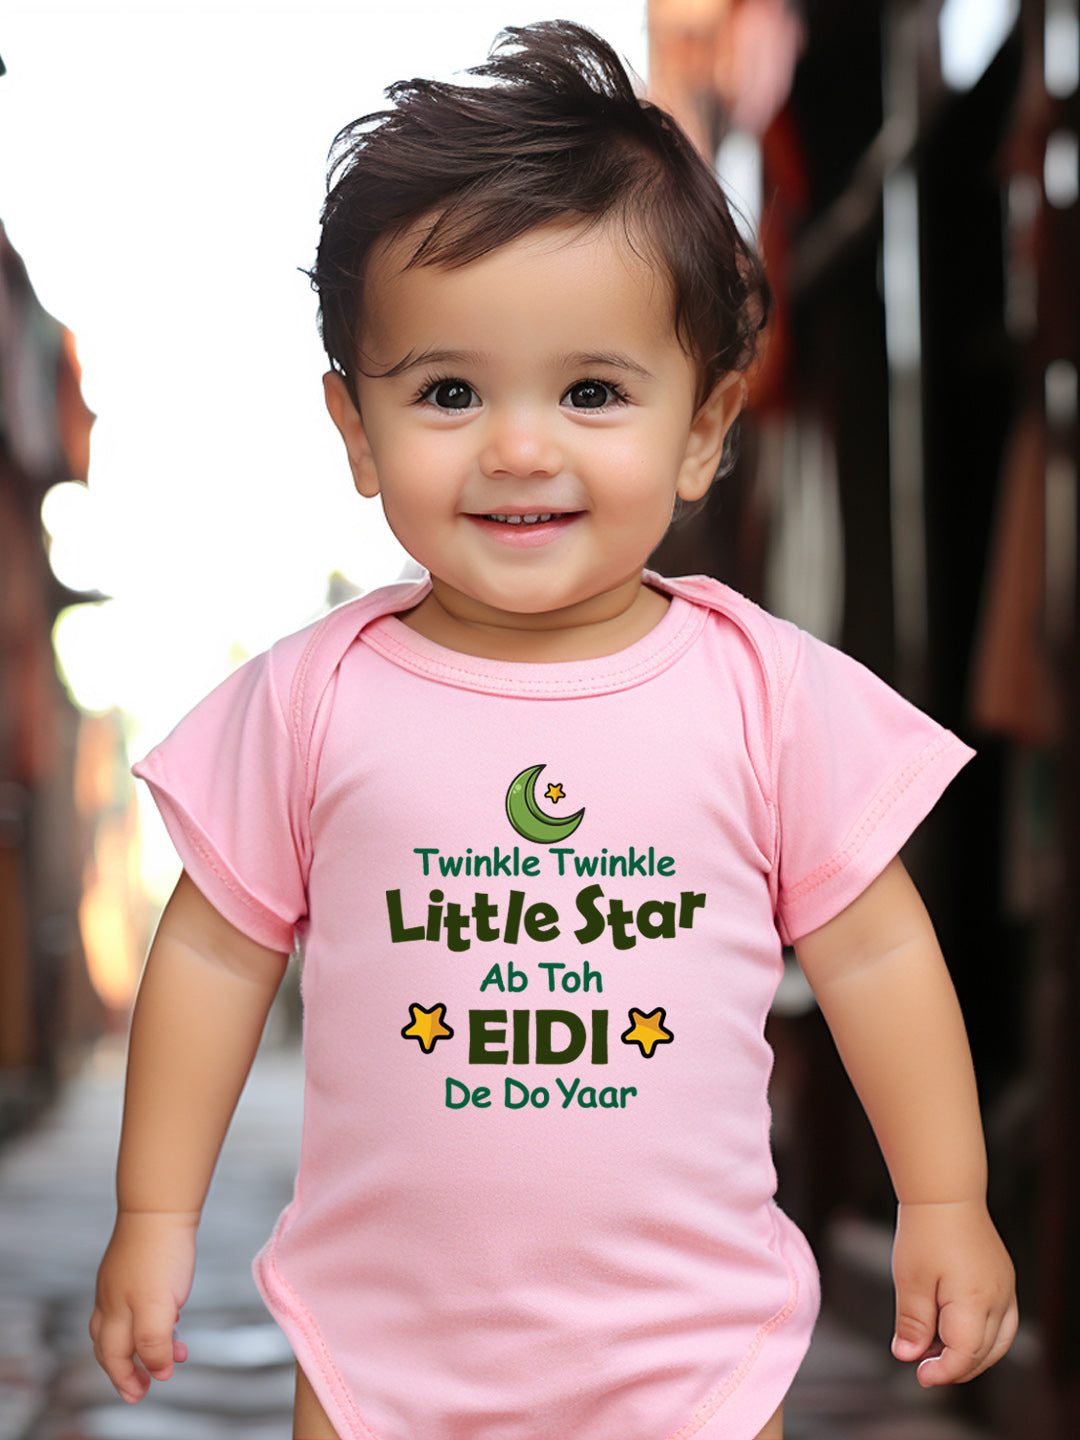 Twinkle Twinkle Little Star - Ab Toh Eidi De Do Yaar Baby Romper | Onesies